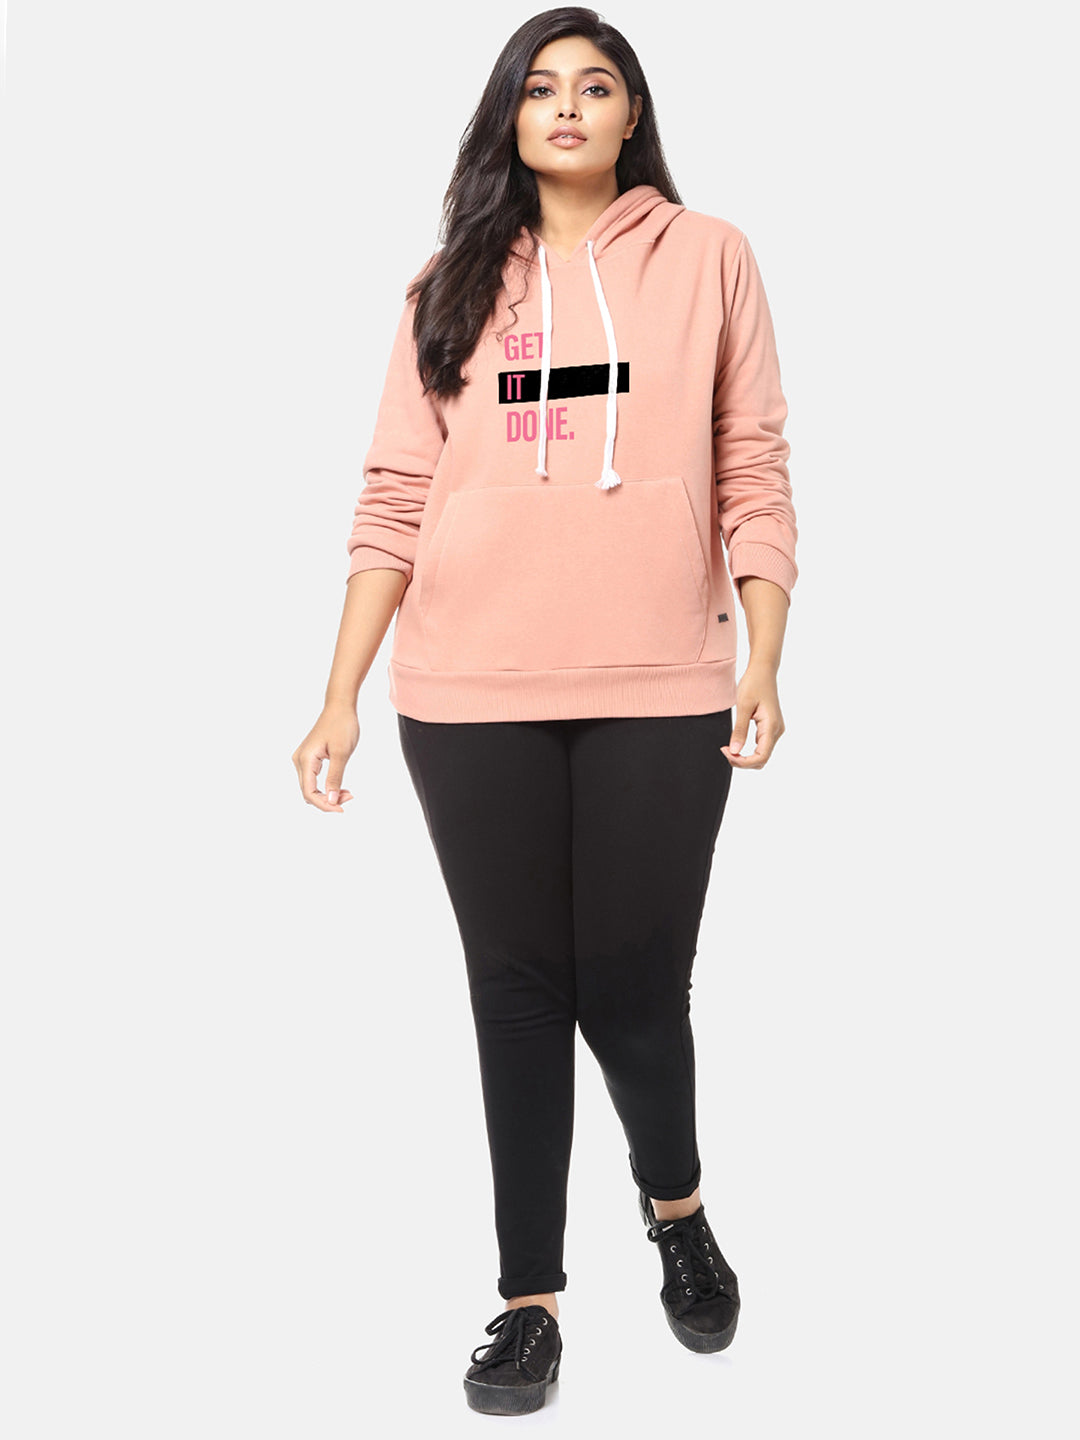 Baby Pink Hooded Sweatshirt